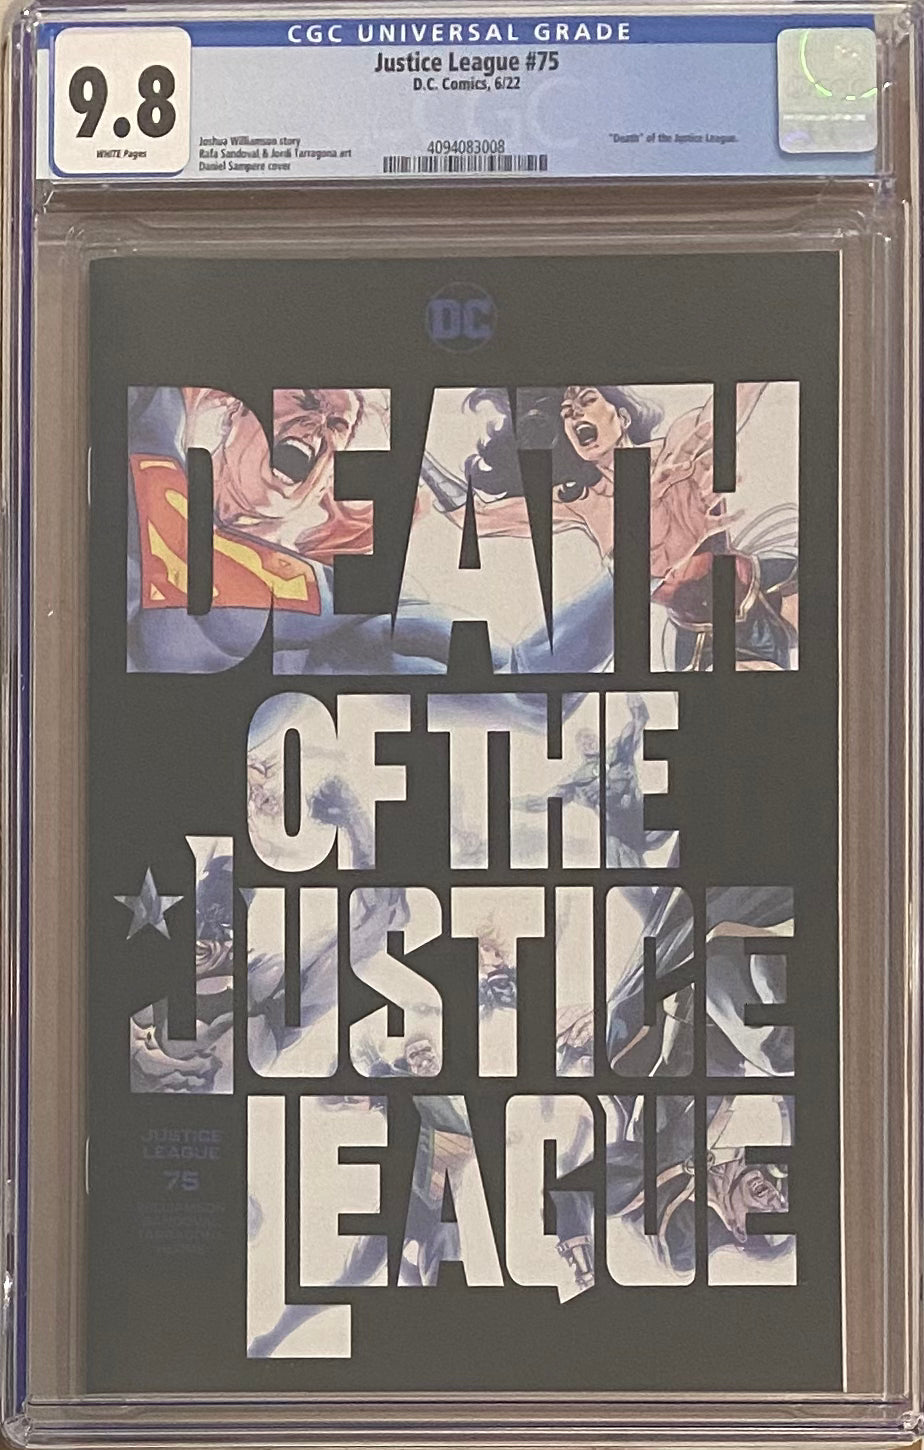 Justice League #75 CGC 9.8 - Death of Justice League